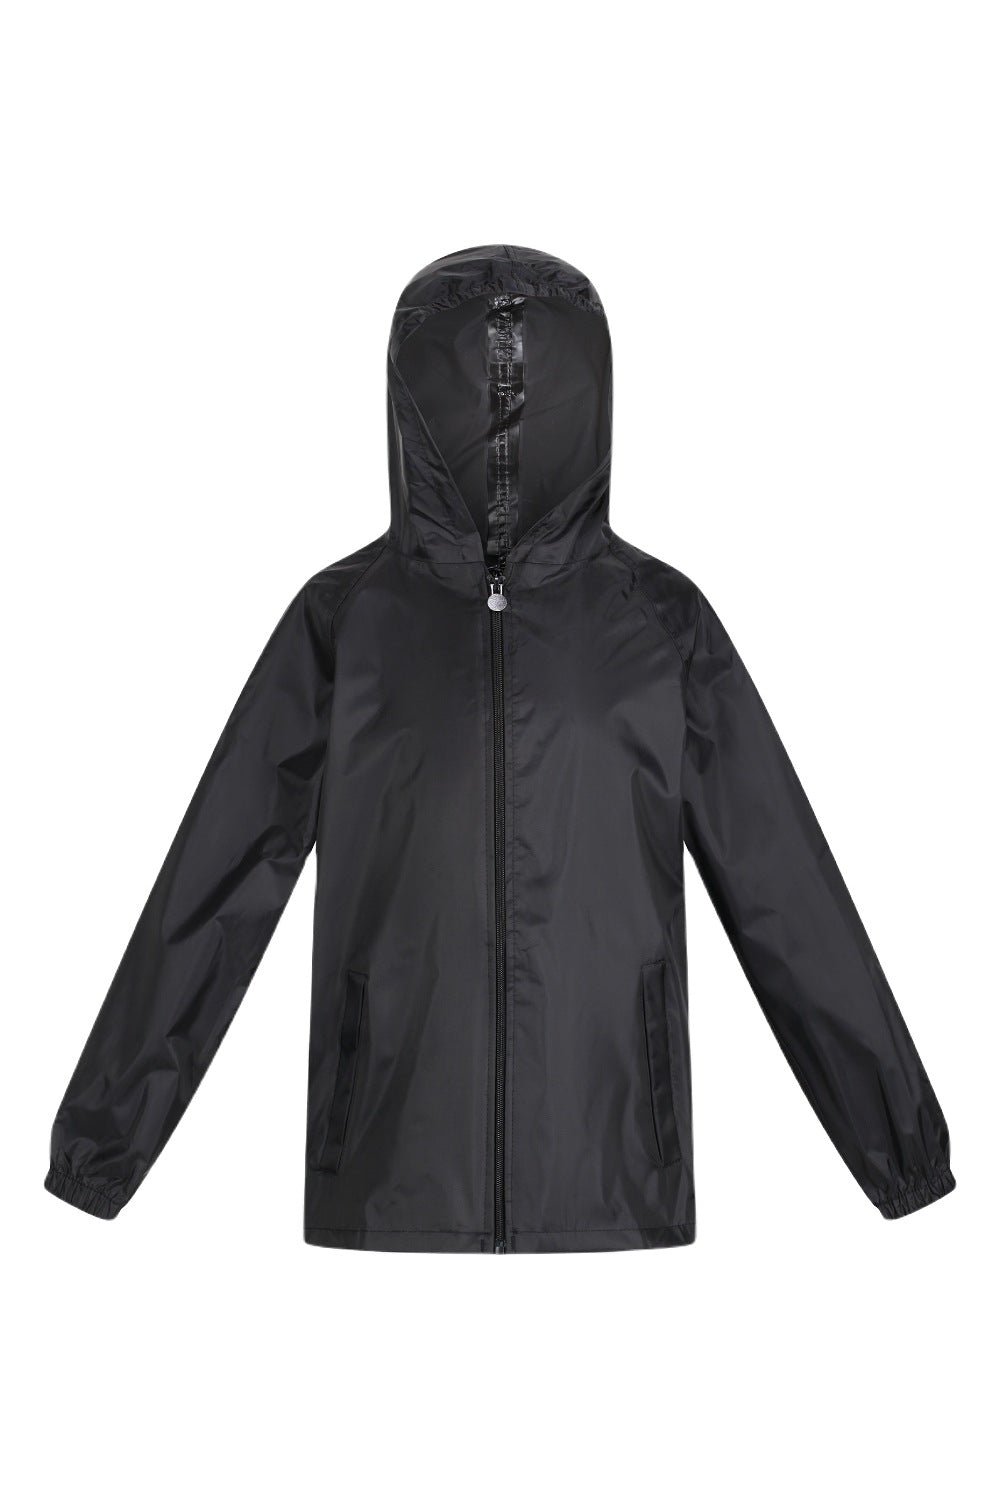 Regatta Kids Pro Stormbreak Waterproof Jacket In Black